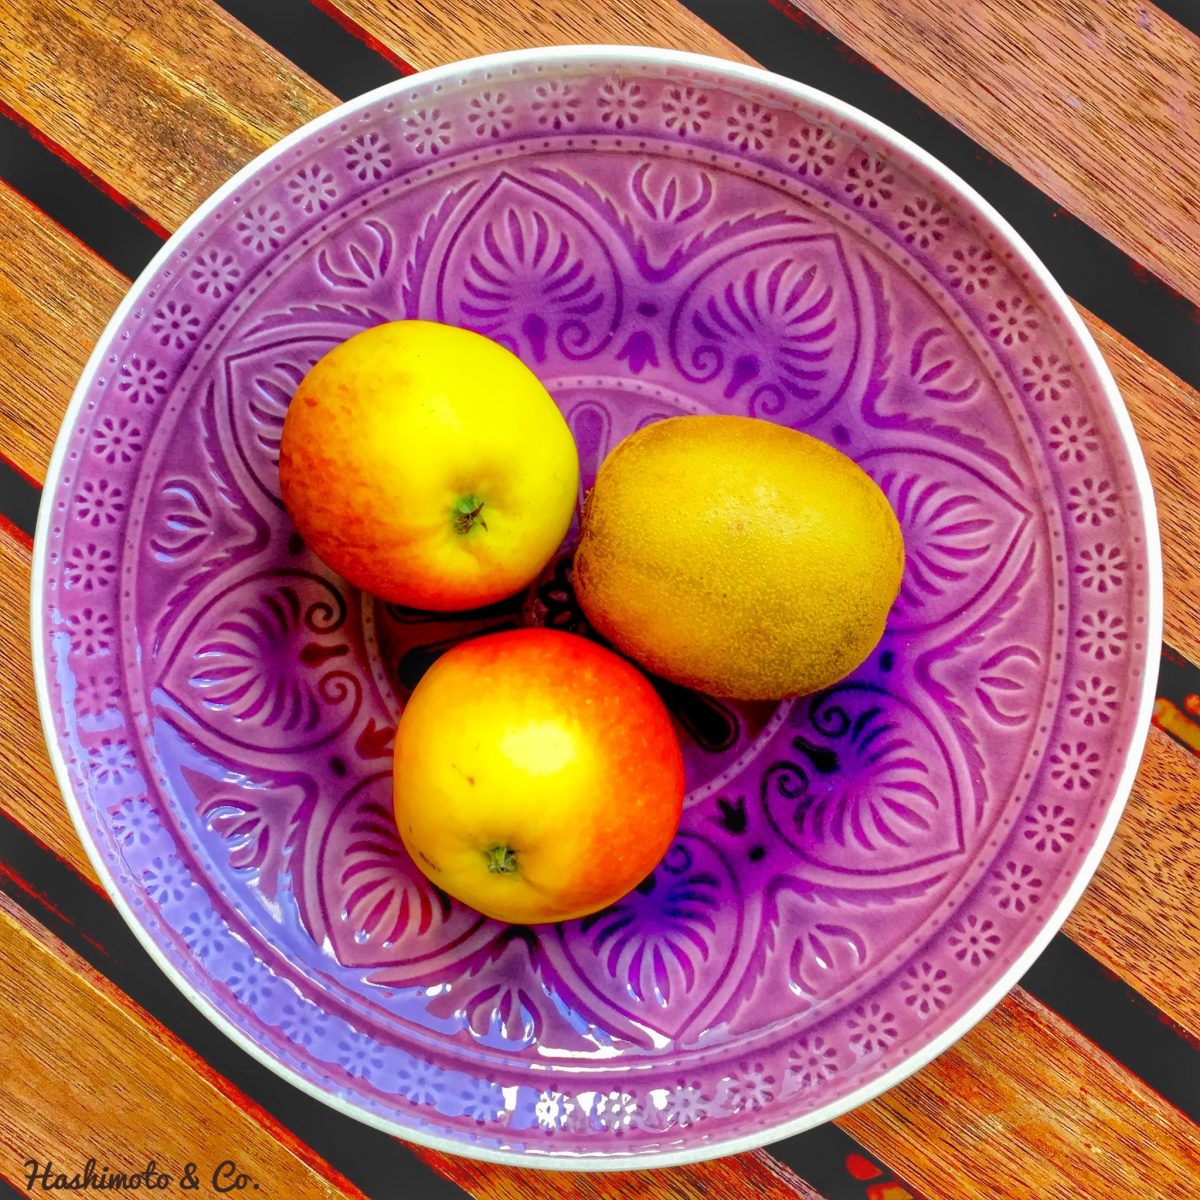 Zwei mittelgroße Äpfel und eine mittelgroße Kiwi entsprechen 20 Gramm Fructose.